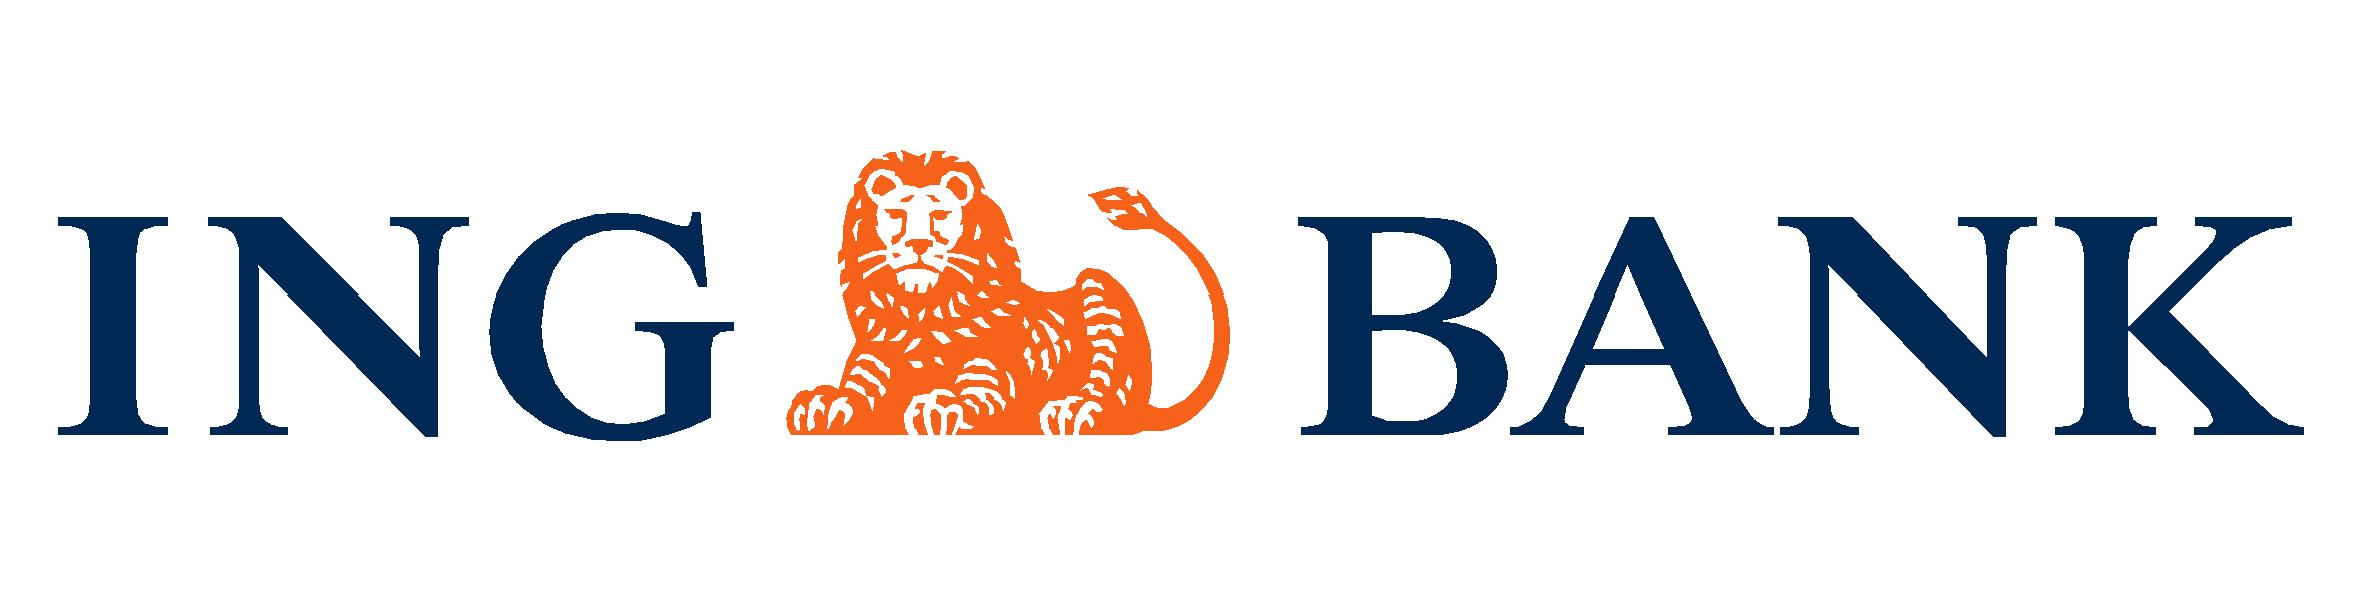 ING BANK Logo photo - 1